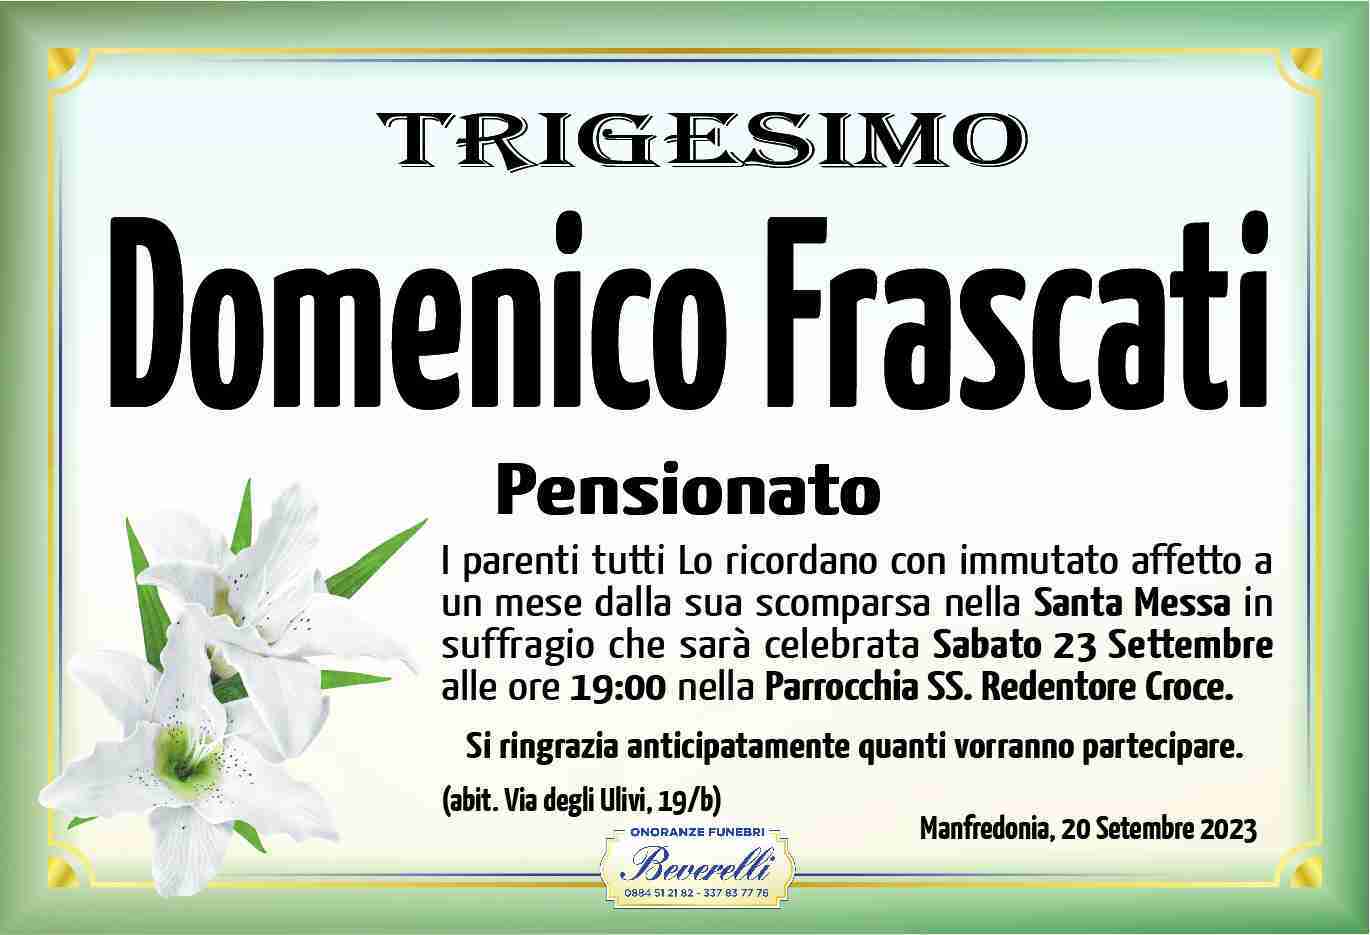 Domenico Frascati